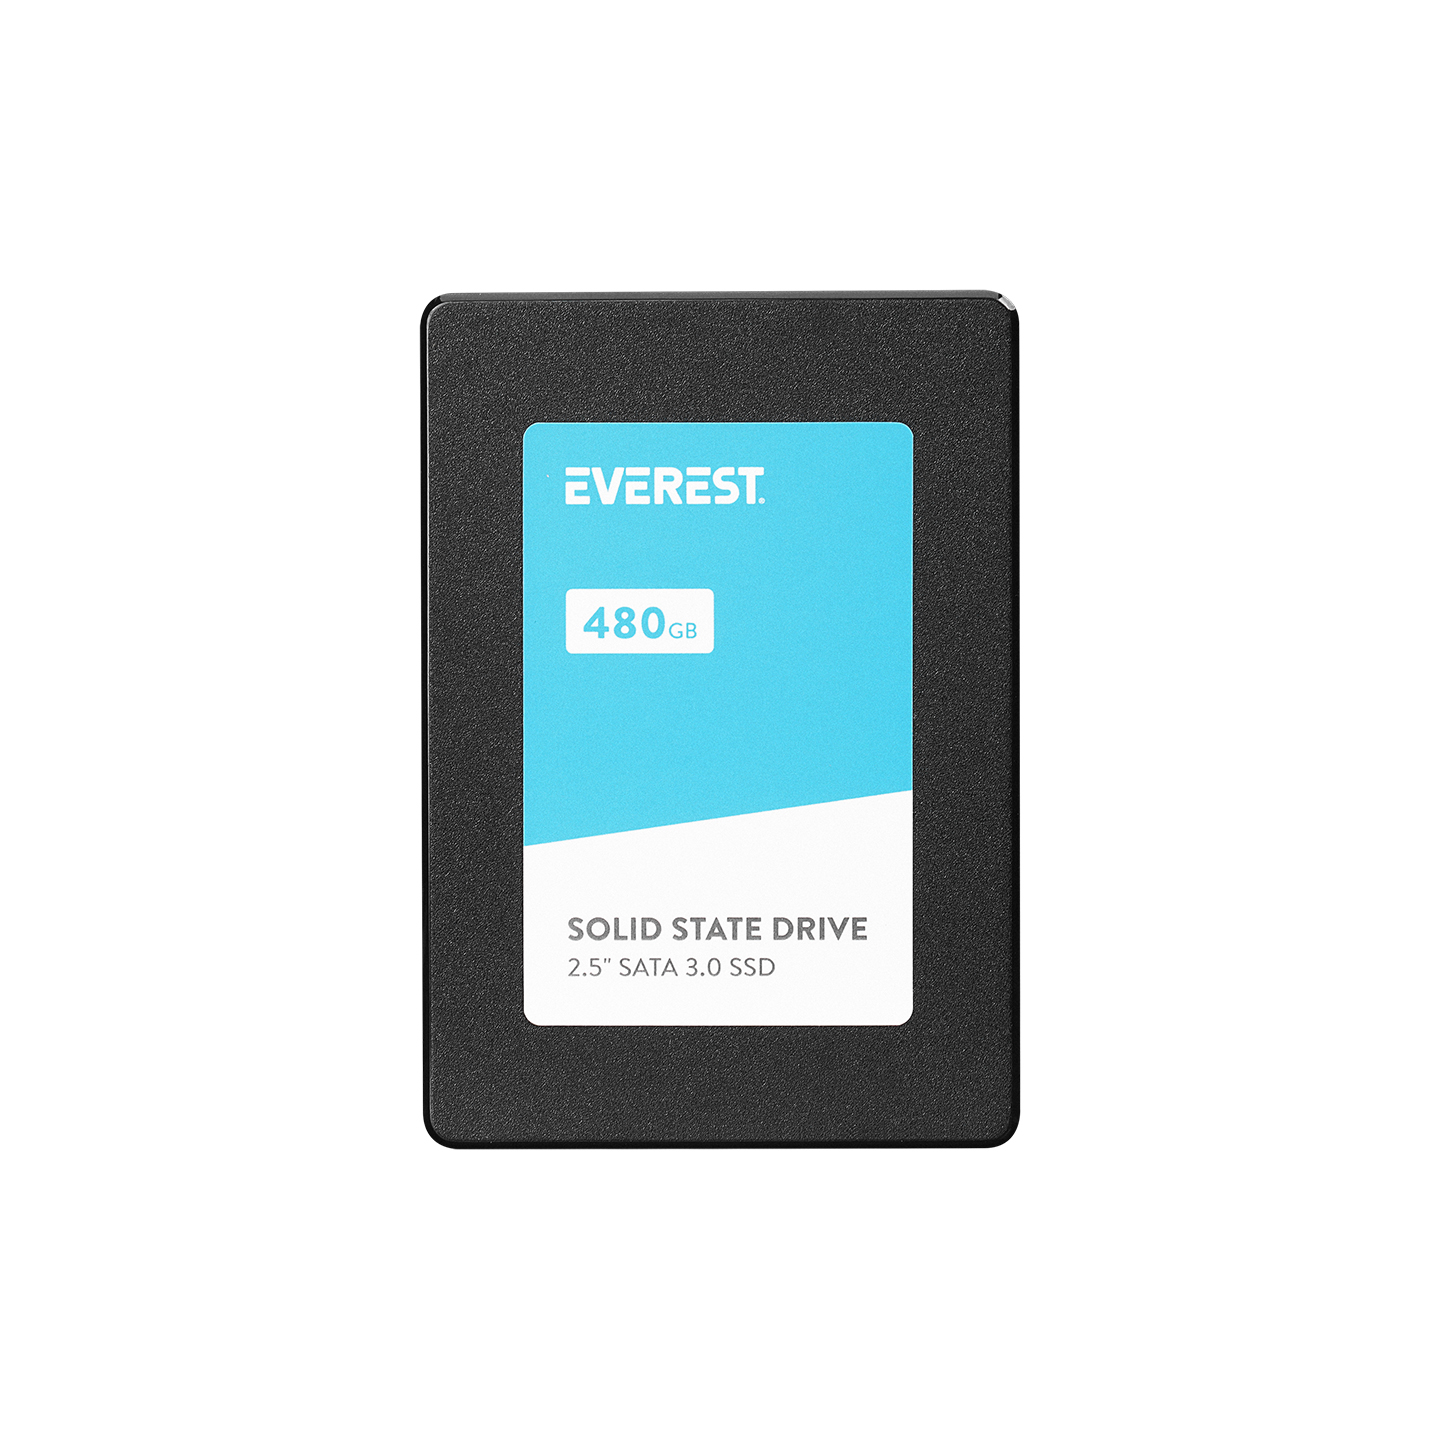 Everest ES480SH 480GB 2.5 SATA 3.0 520MB/450MB SMI+HYNIX 3D NAND Flash SSD (Solid State Drive)